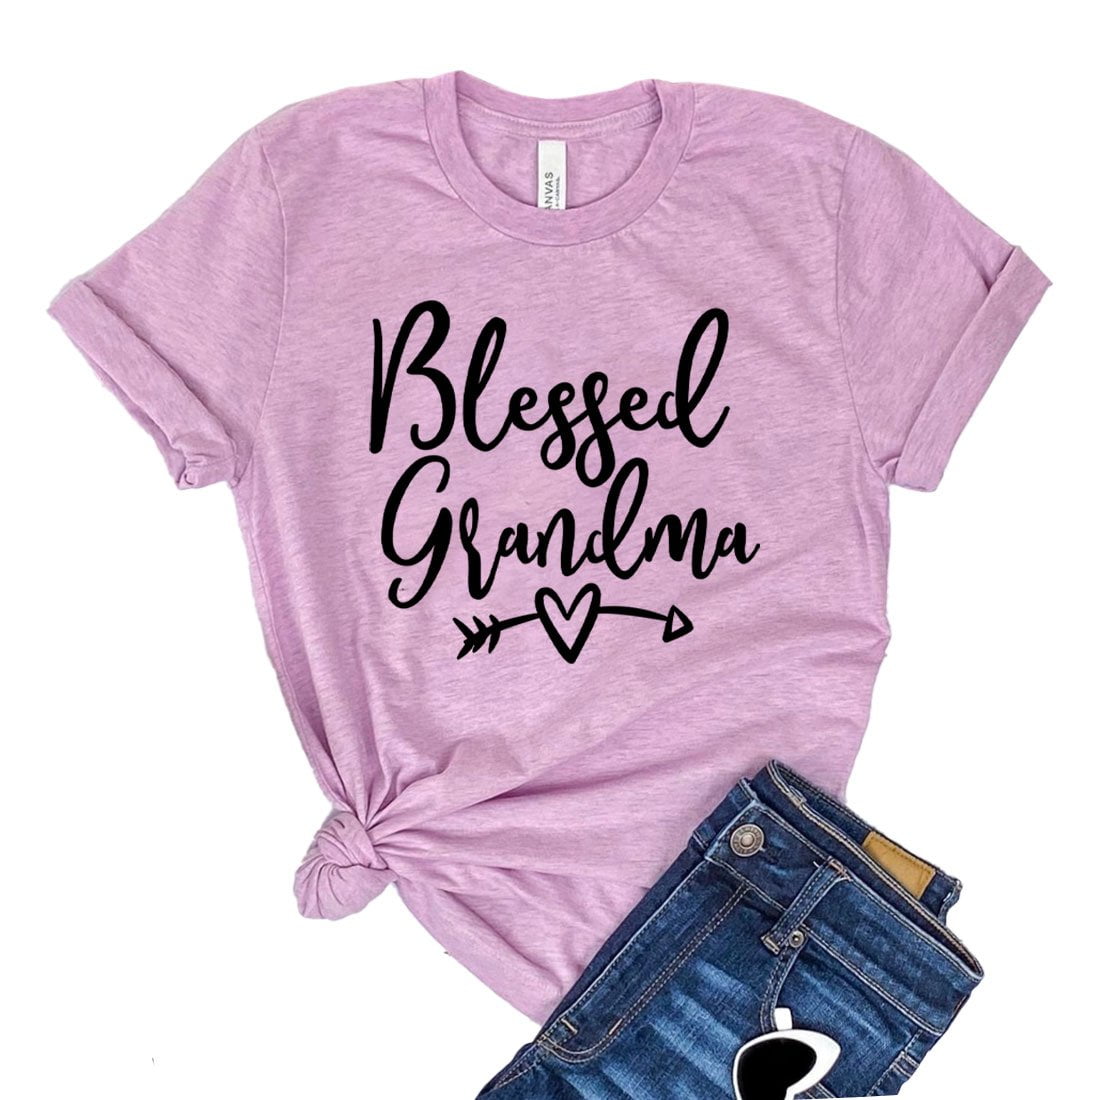 Granny Tshirt New Grandma Shirt Gift For Wife Blessed Granny Shirt Granny T shirt New Mom Tee Granny Birthday Gift Mom Birthday Gift